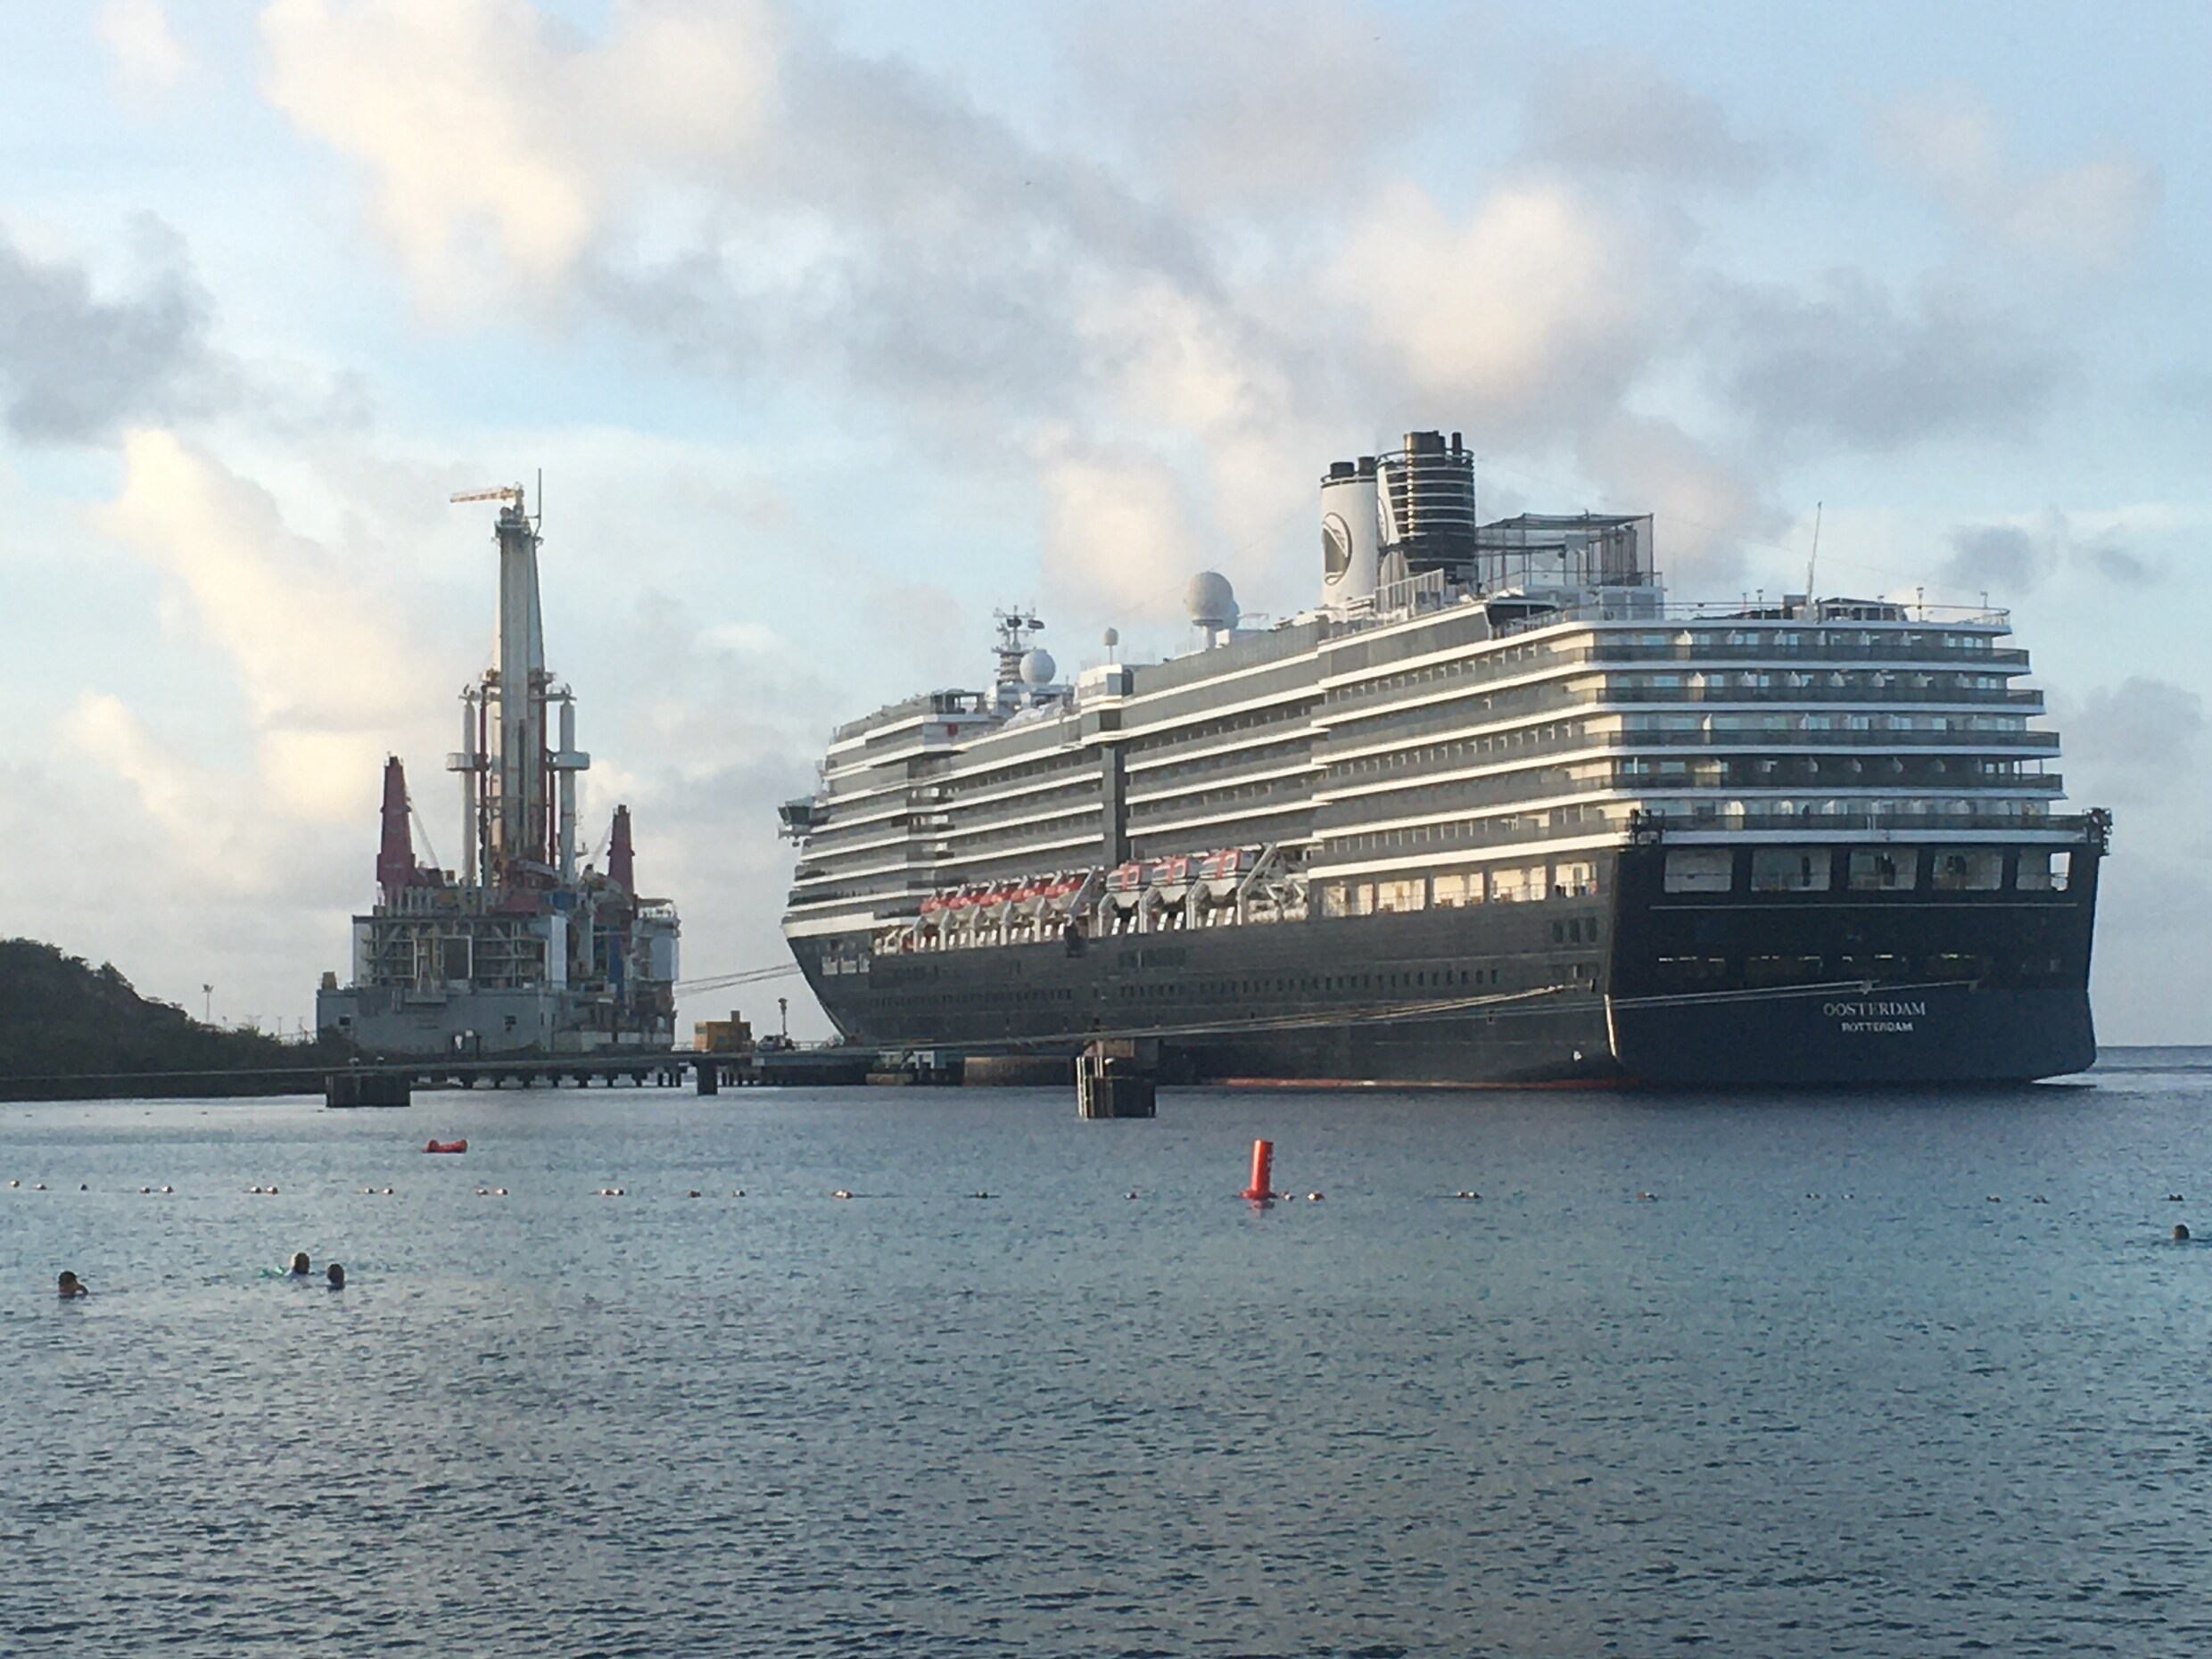 Voor Curaçao waren de zwaar vervuilende cruiseschepen een bron van toerisme-inkomsten, net als de olietankers.